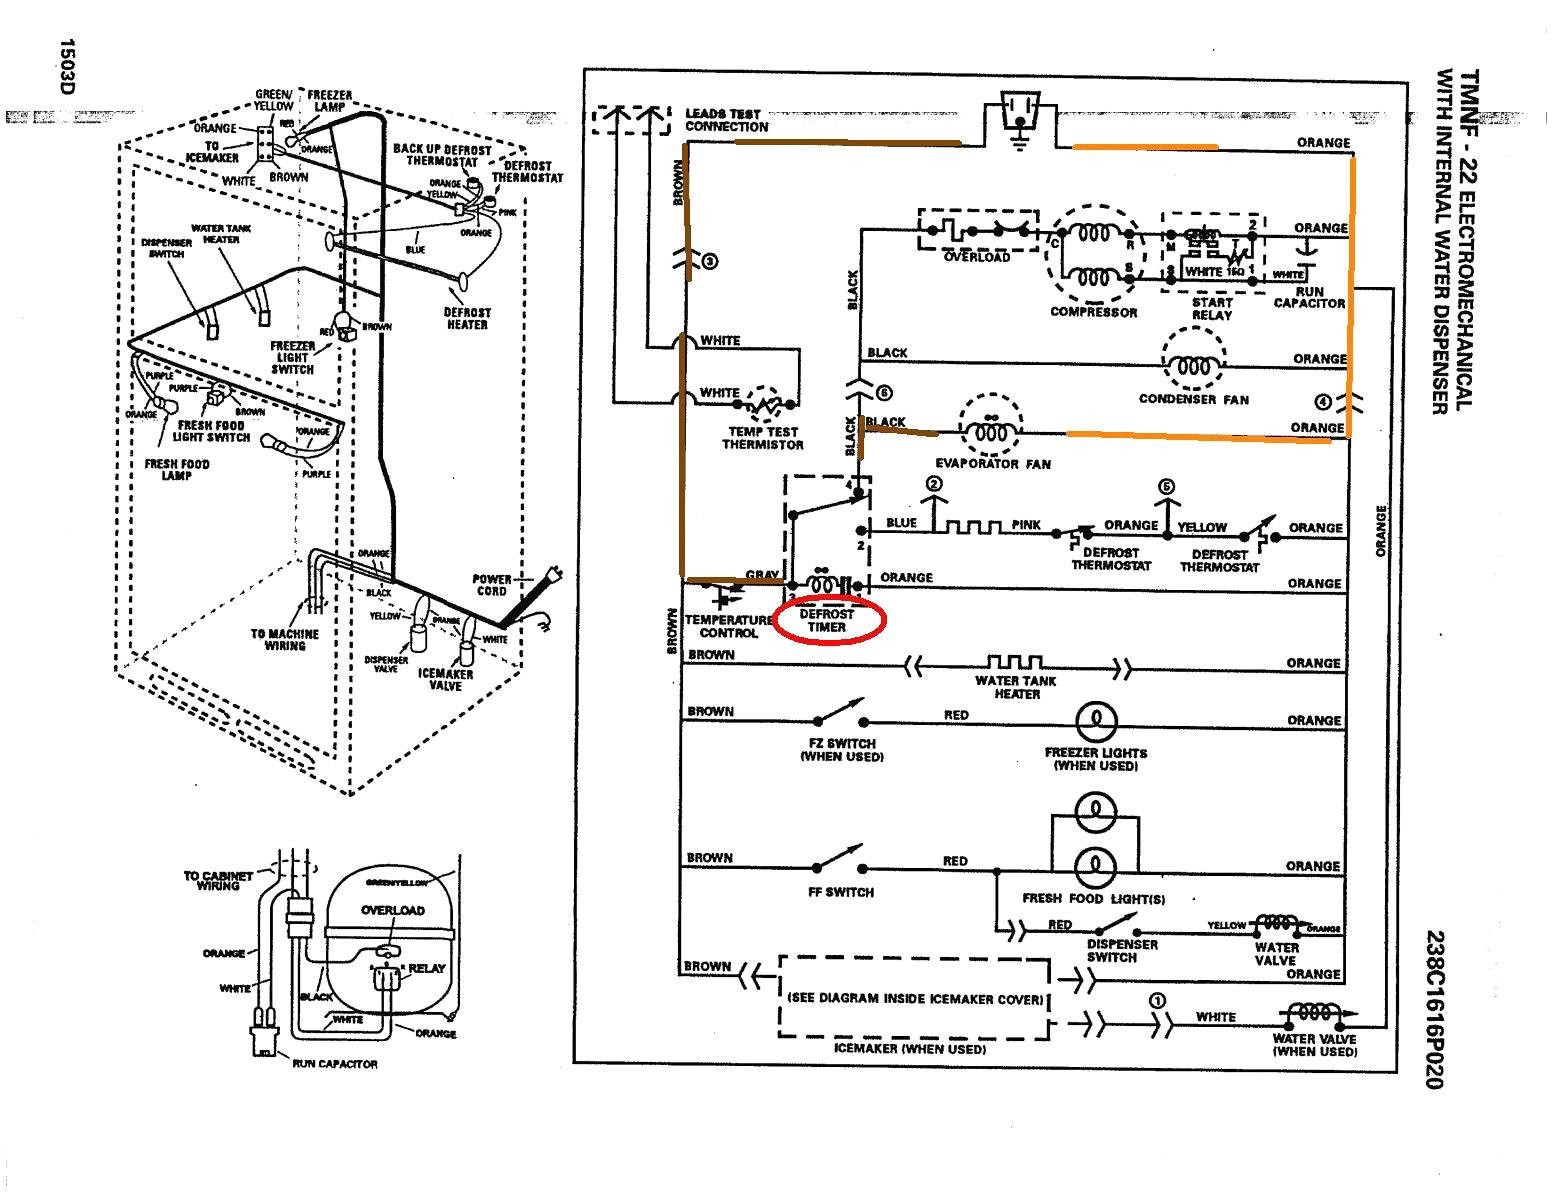 1952 ge refrigerator wiring diagram smart wiring diagrams u2022 rh emgsolutions co Refrigerator Wiring Diagram PDF